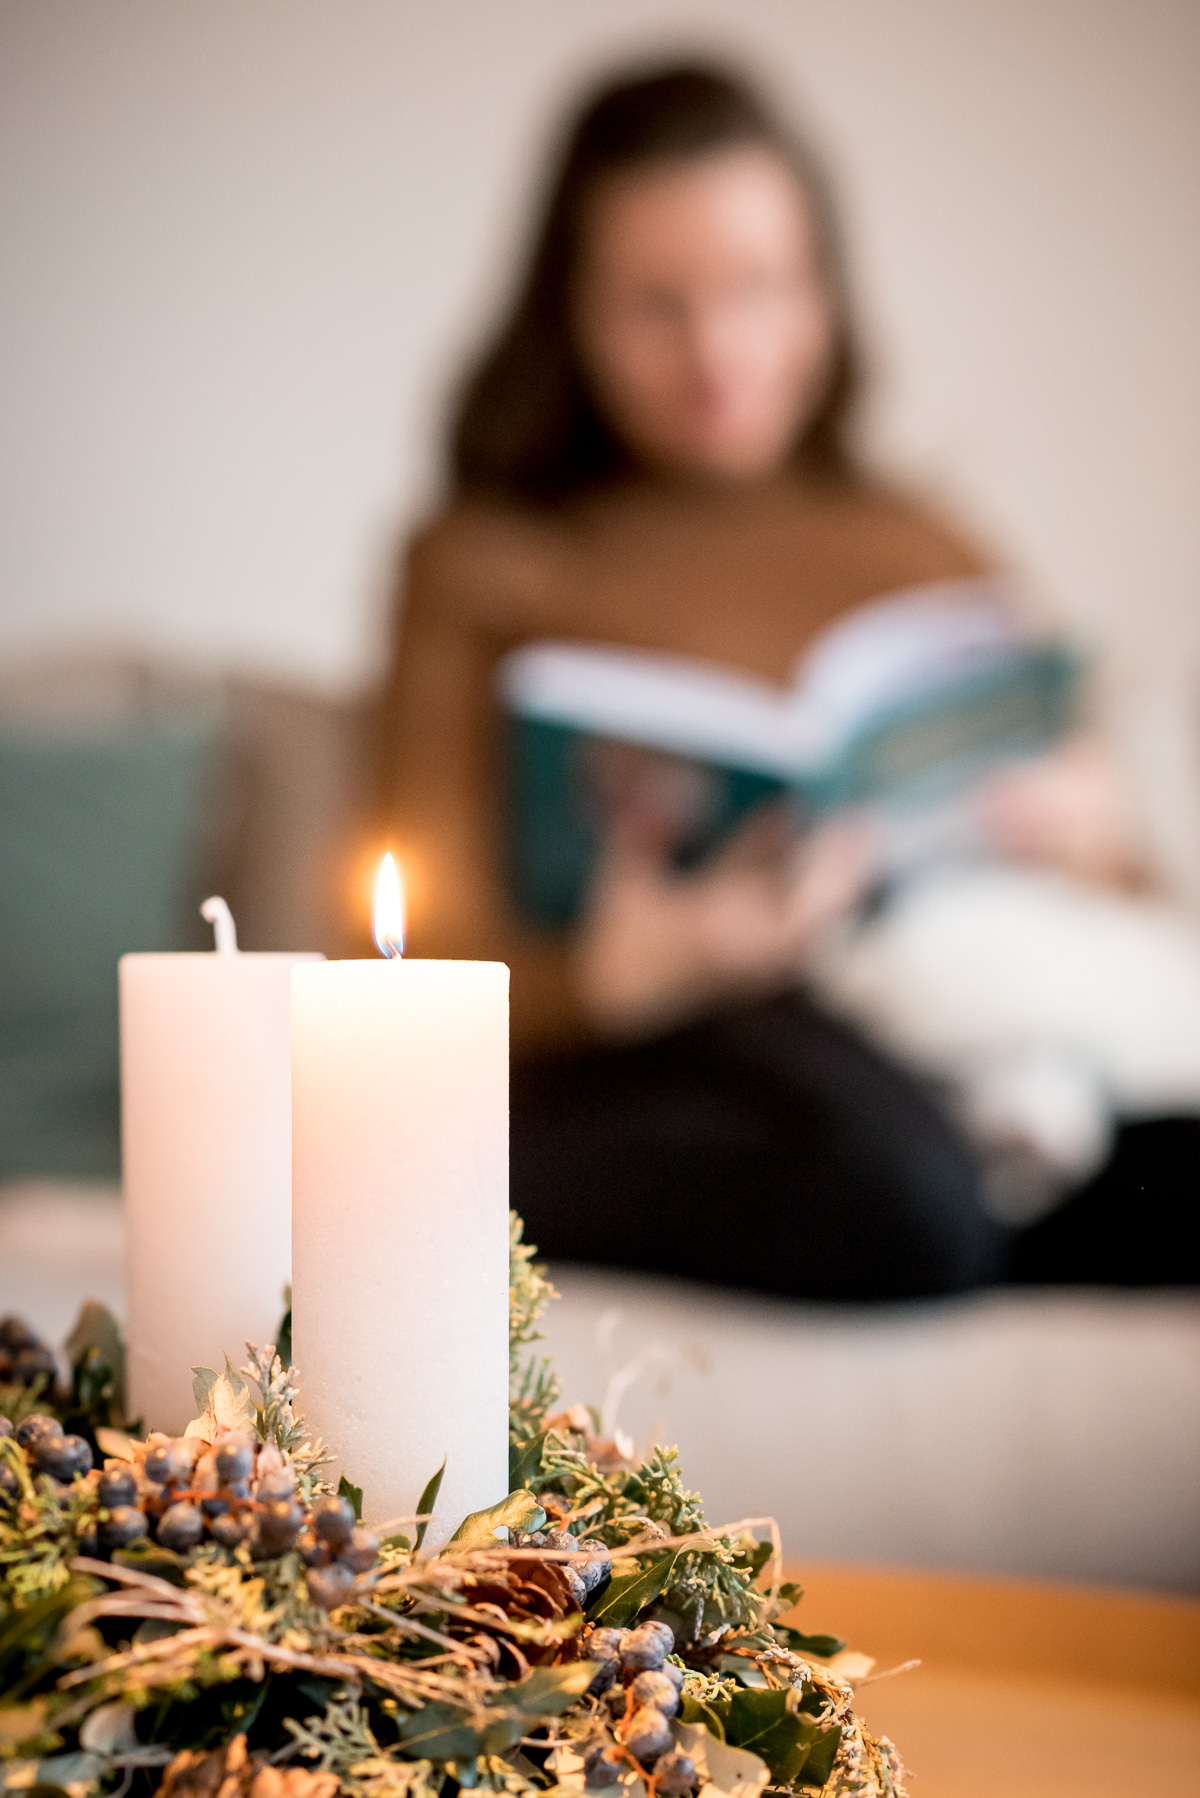 Frau blättert im Buch "Von wilder Welt und Weihnachten", im Vordergrund ein Adventskranz.